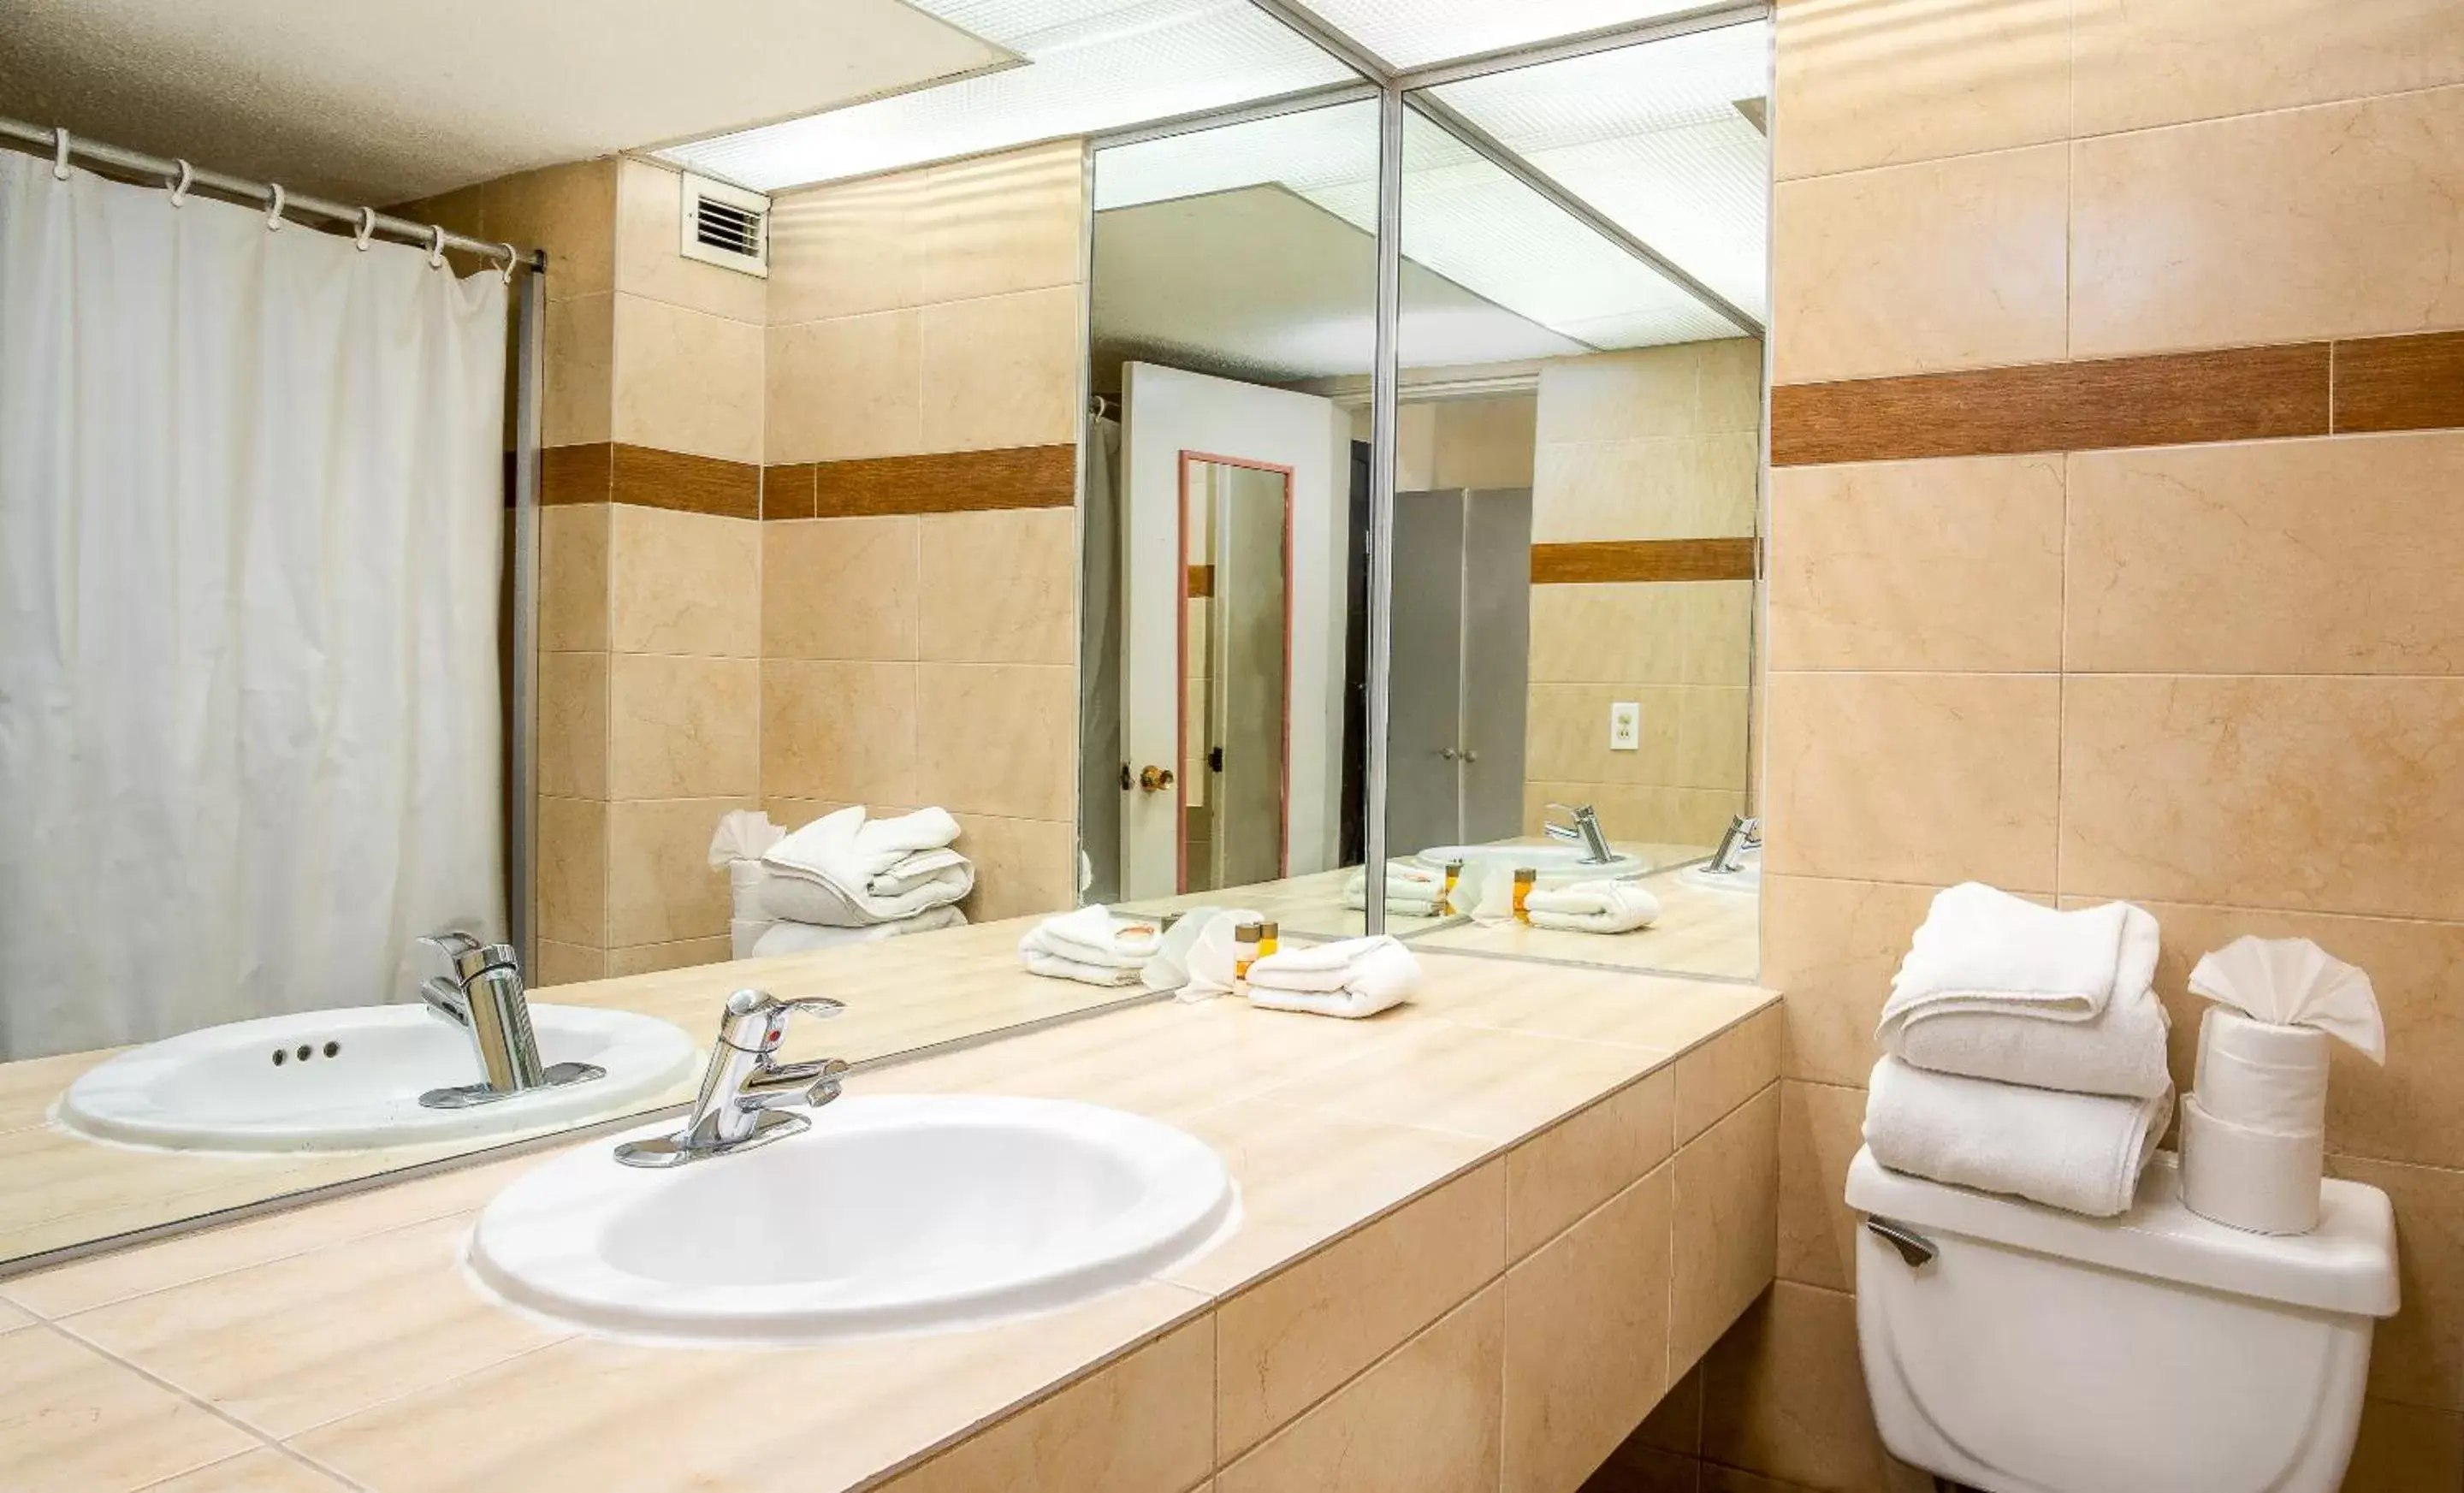 Toilet, Bathroom in Puerto Nuevo Baja Hotel & Villas